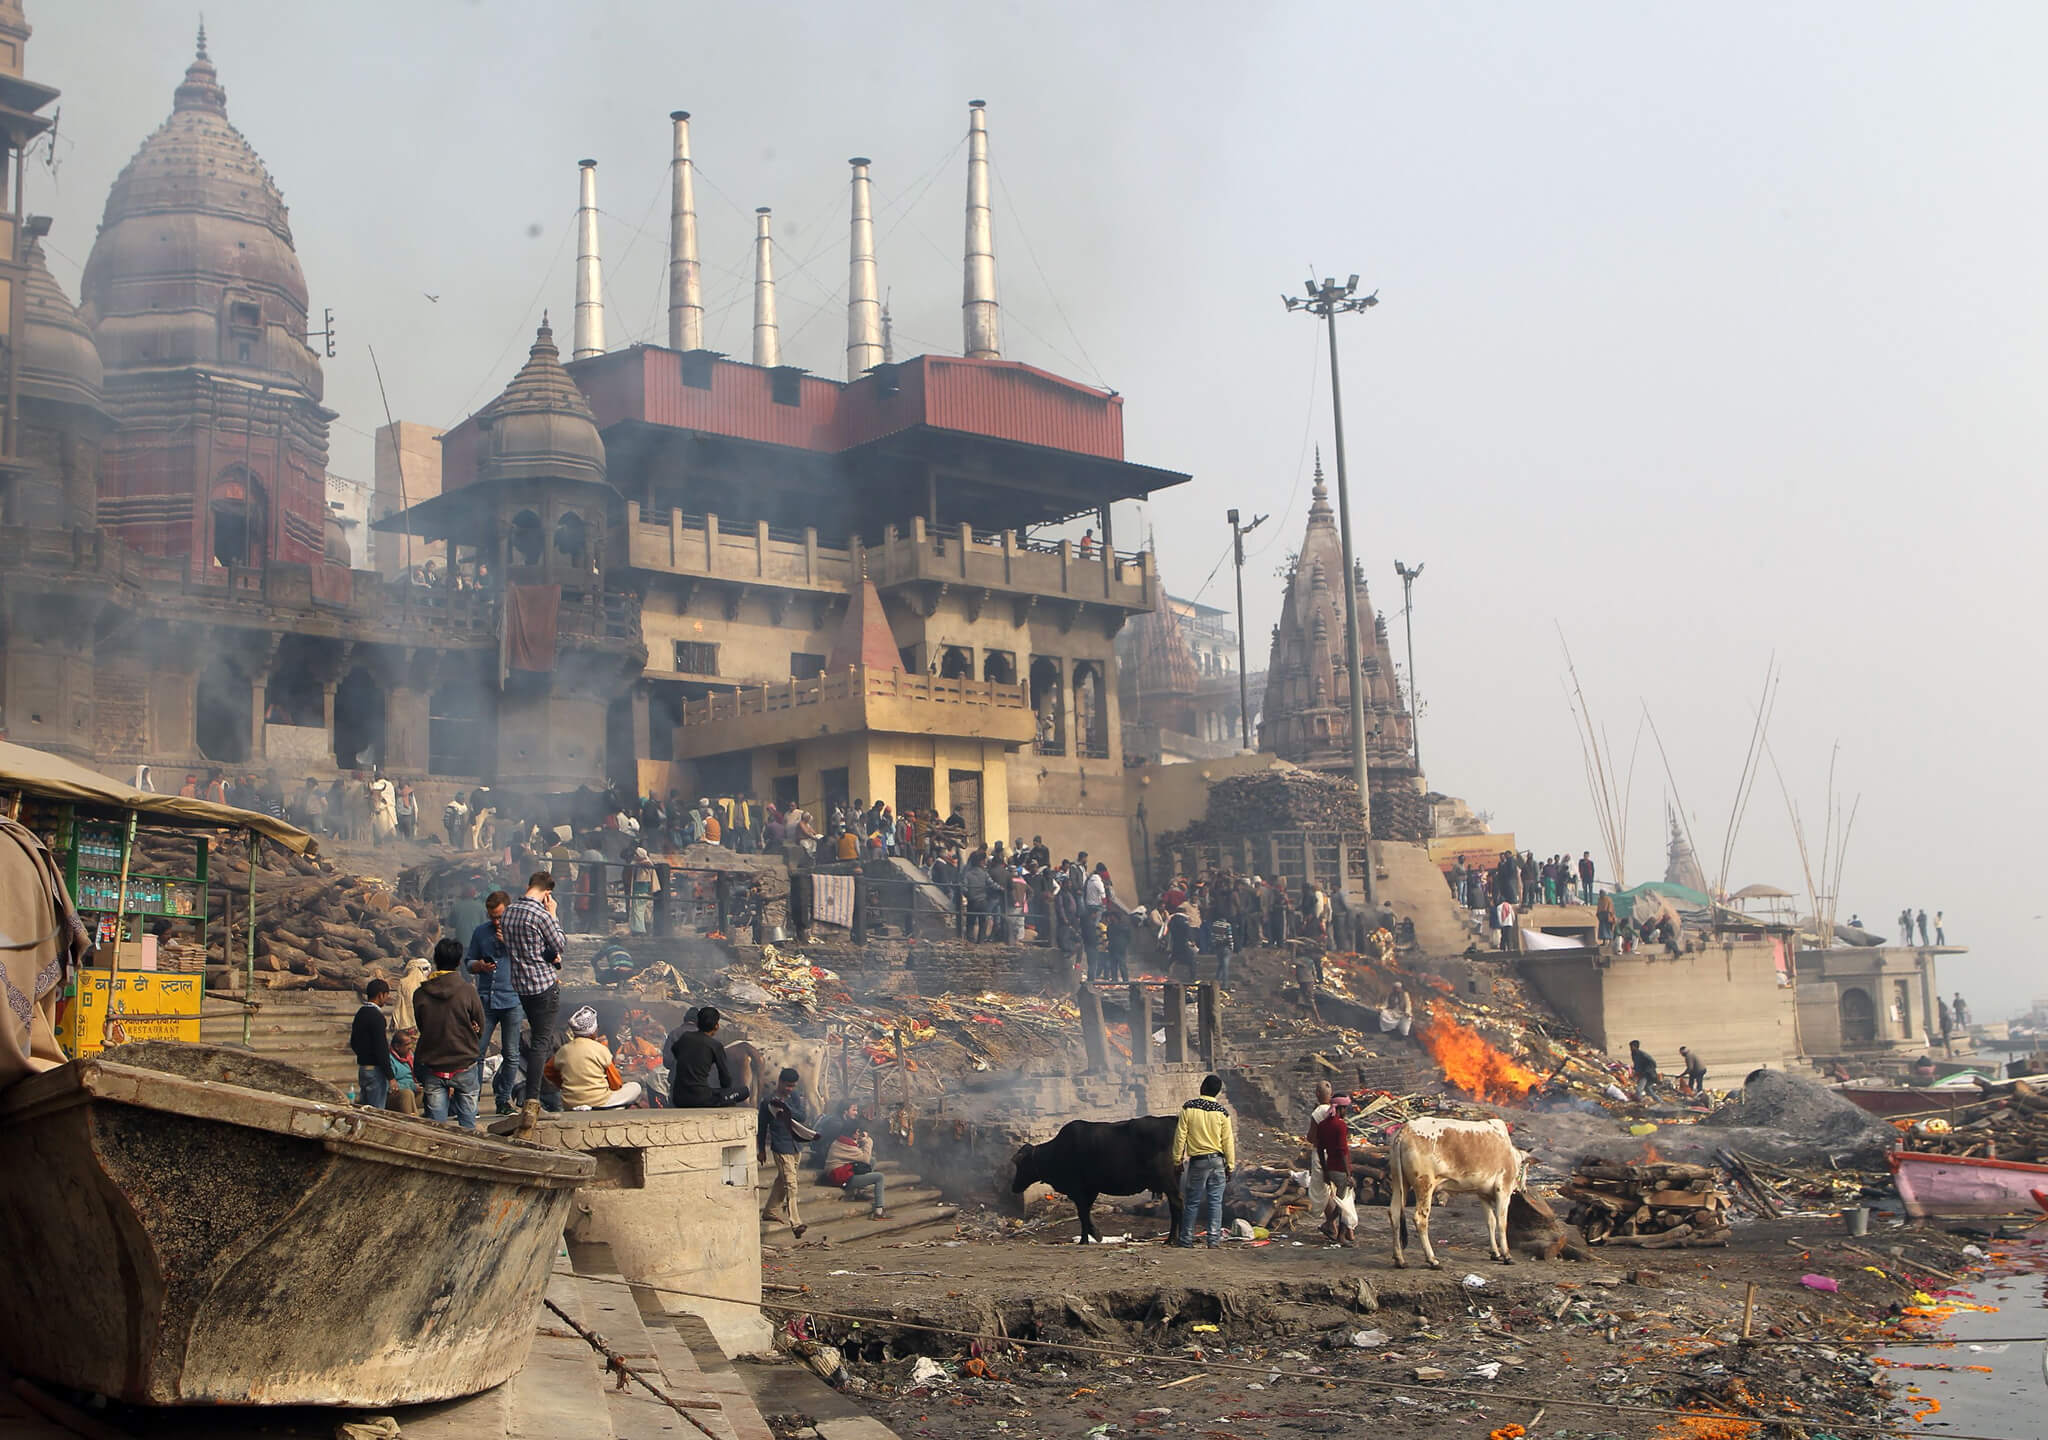 La ciudad sagrada de Varanasi